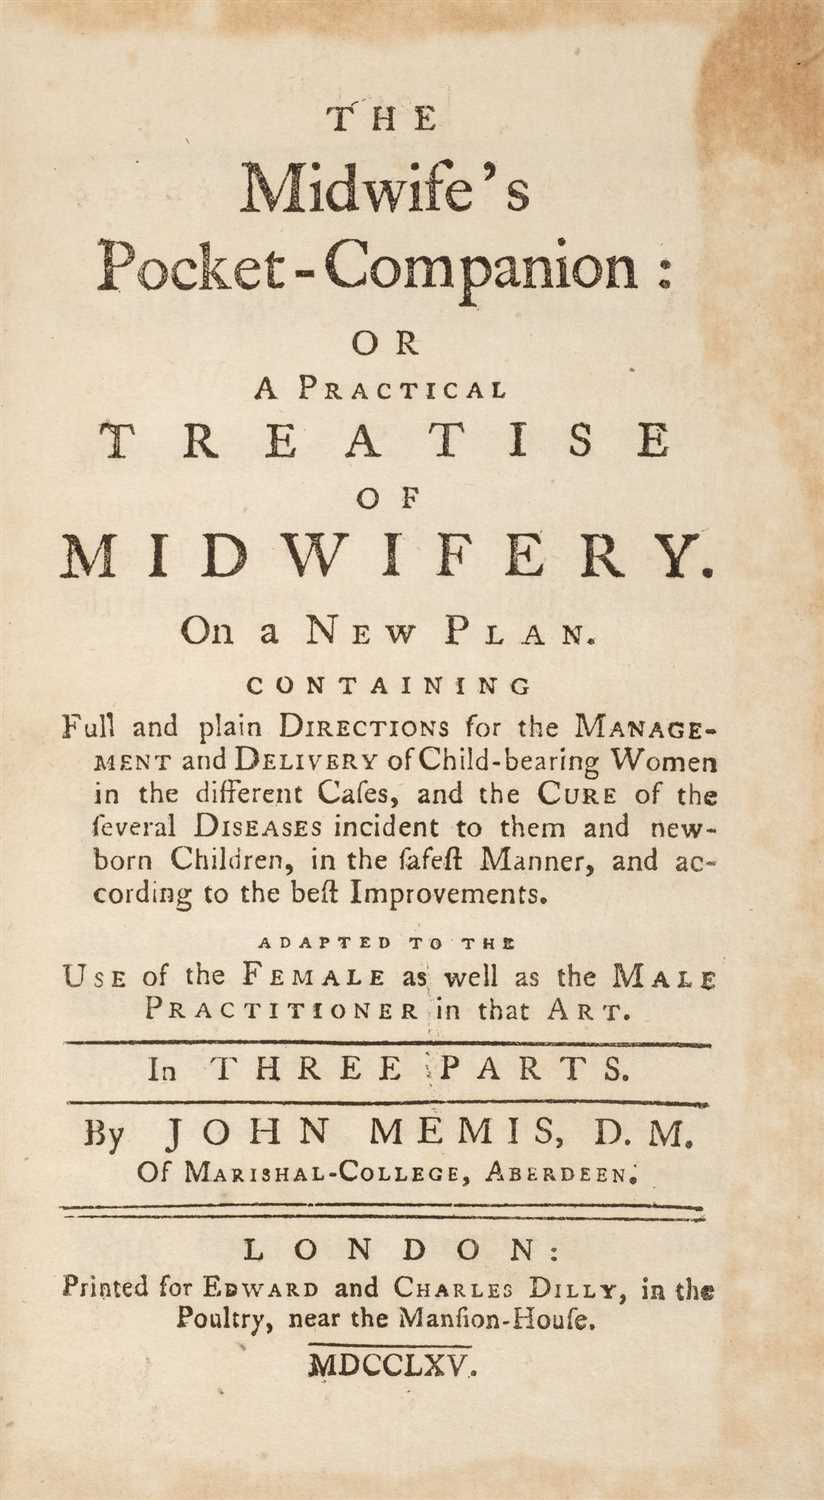 Lot 244 - Memis (John). The Midwife's Pocket-Companion, 1765